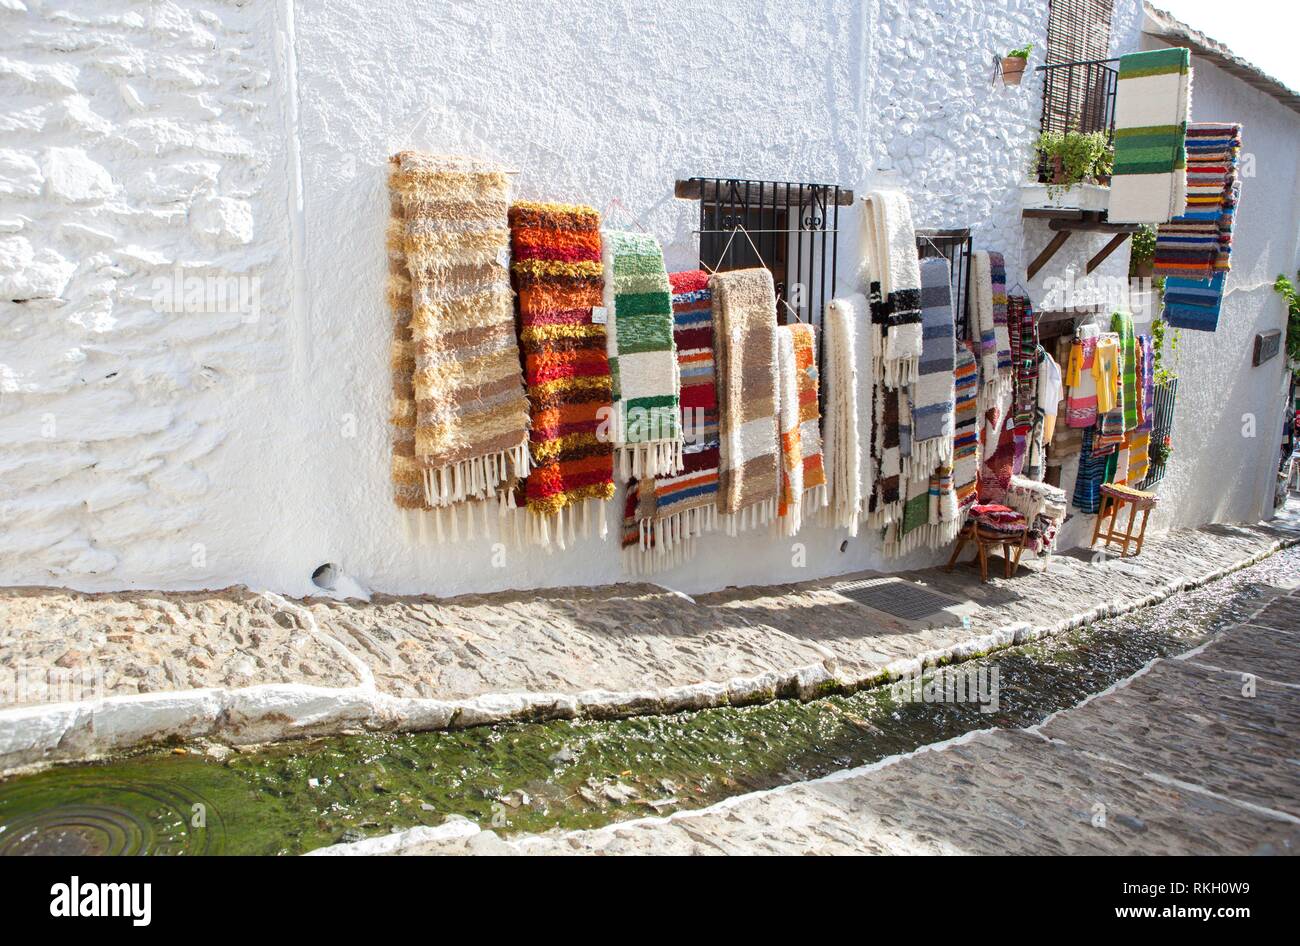 Jarapas per vendere visualizzati sulle pareti a graziosa e tranquilla strada con canale di acqua nel mezzo, Alpujarras, Granada, Spagna. Foto Stock